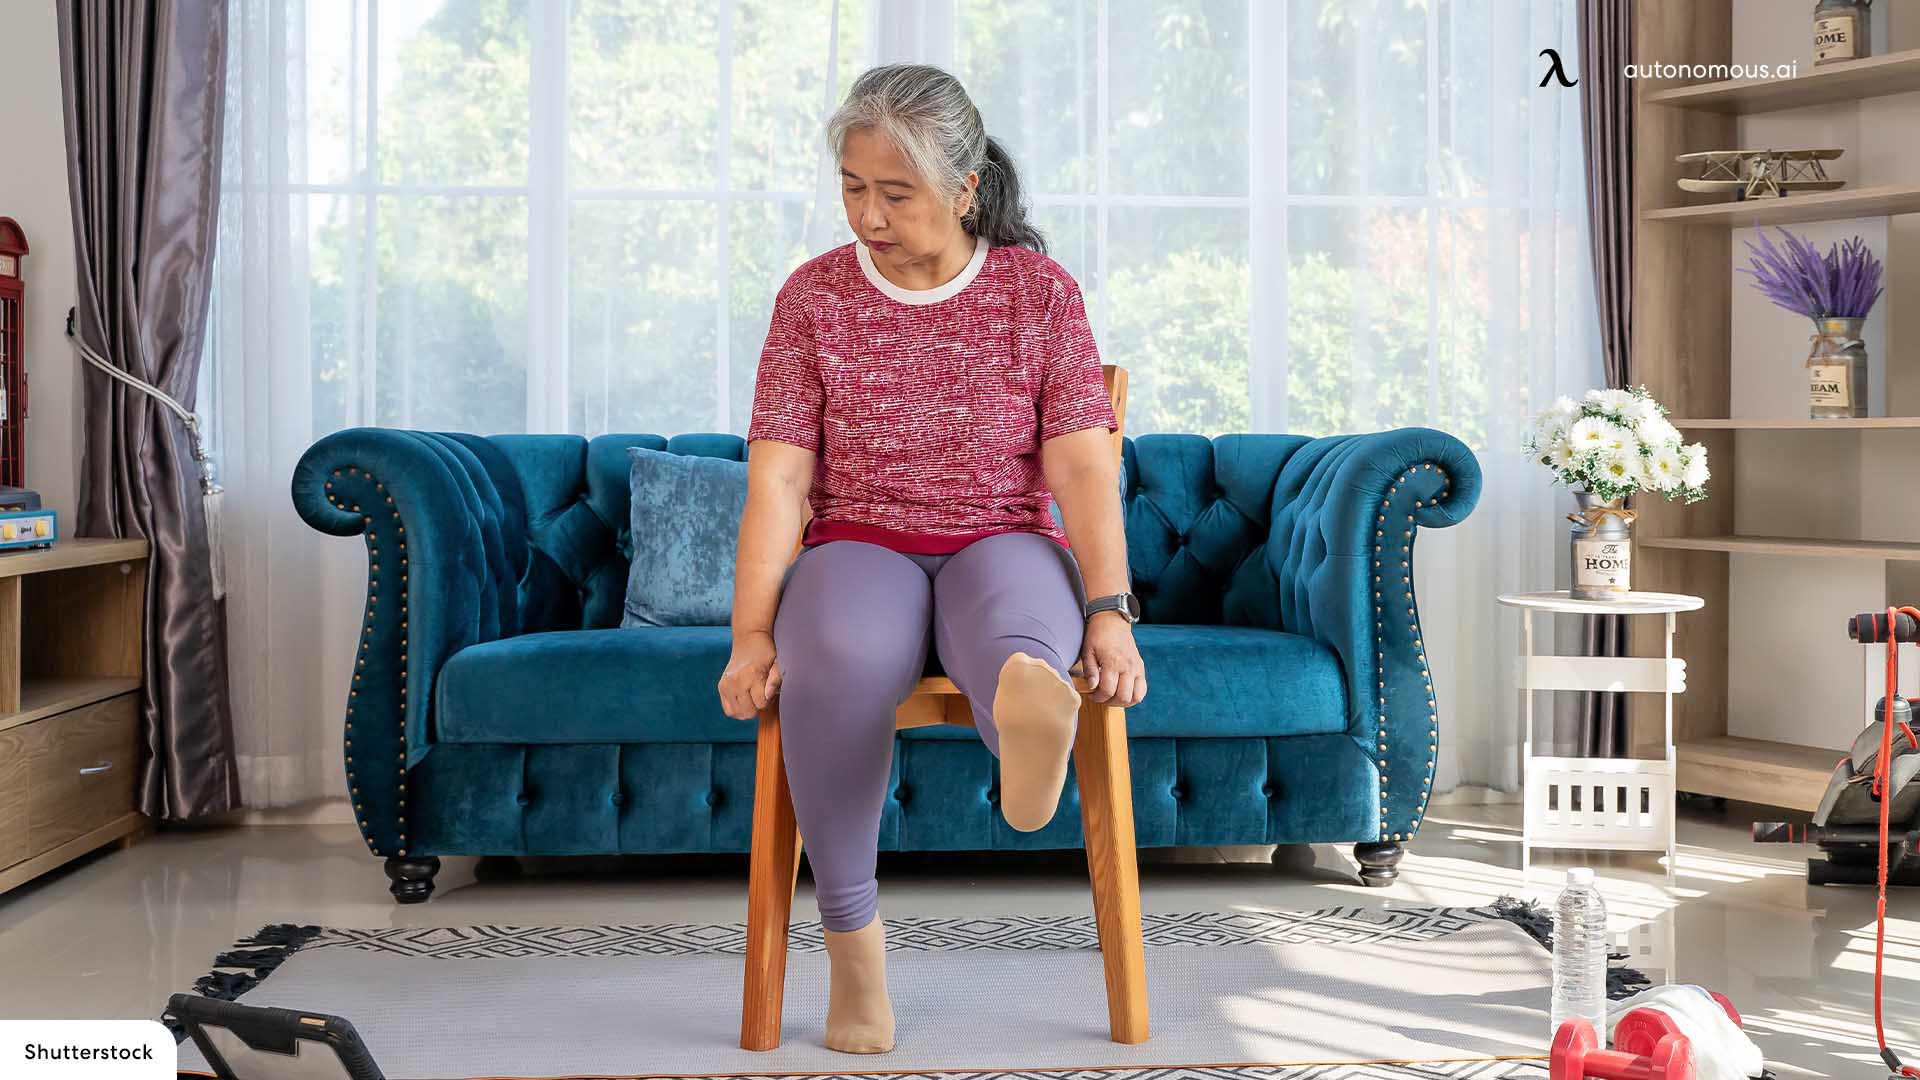 Extended Leg Raise chair exercises for seniors